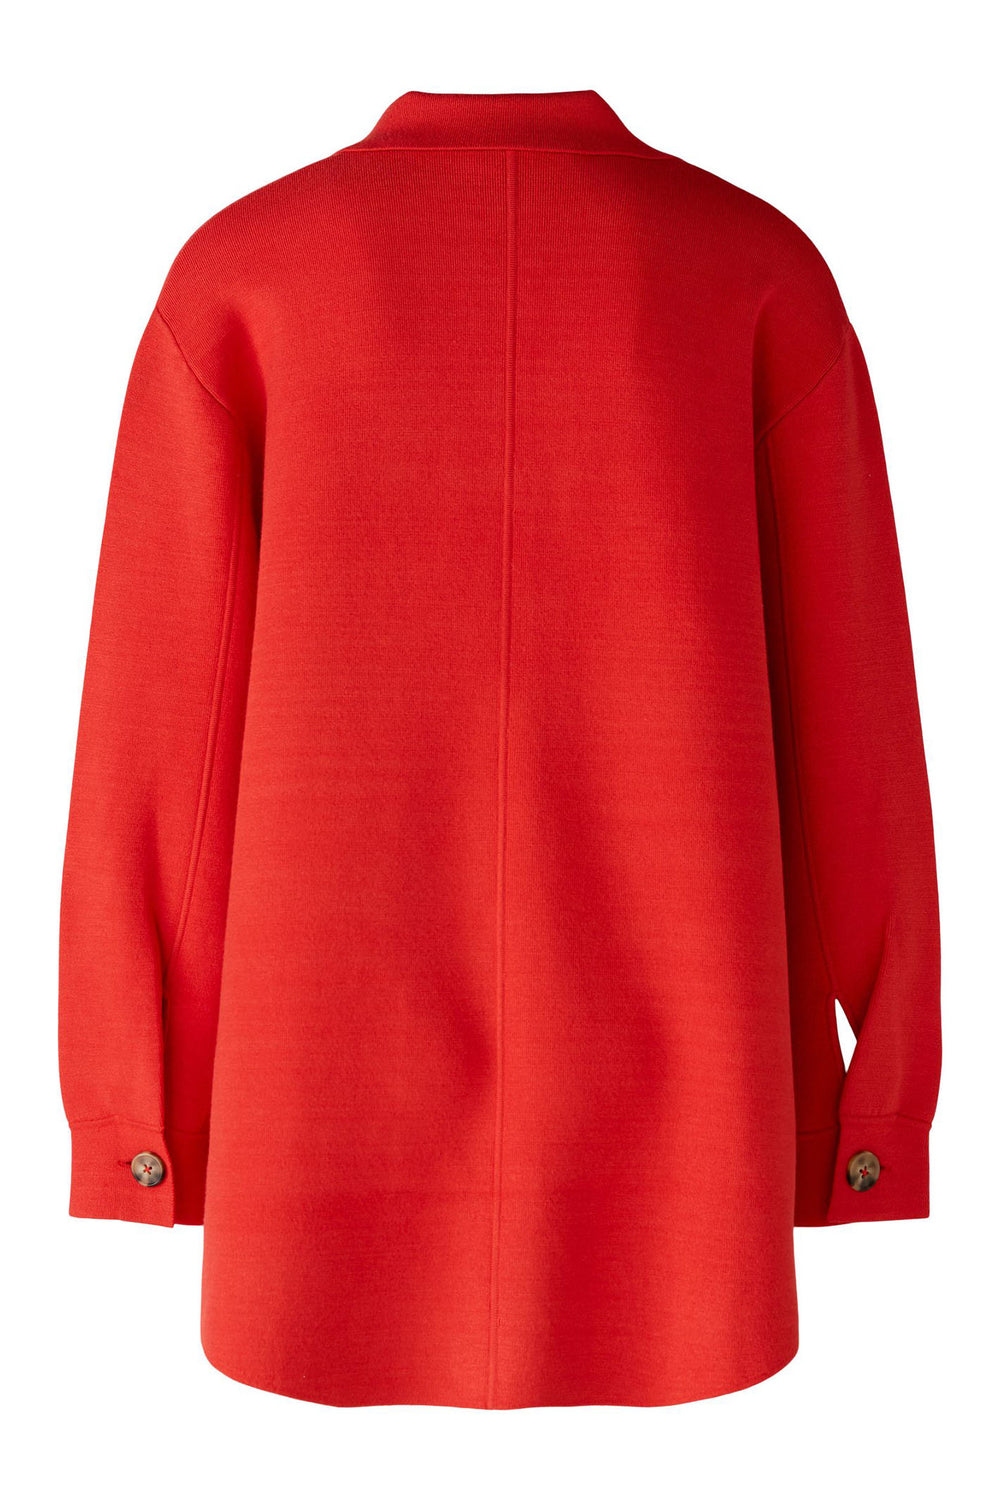 Oui 86689 Aura Orange Knitted Shirt Jacket - Olivia Grace Fashion